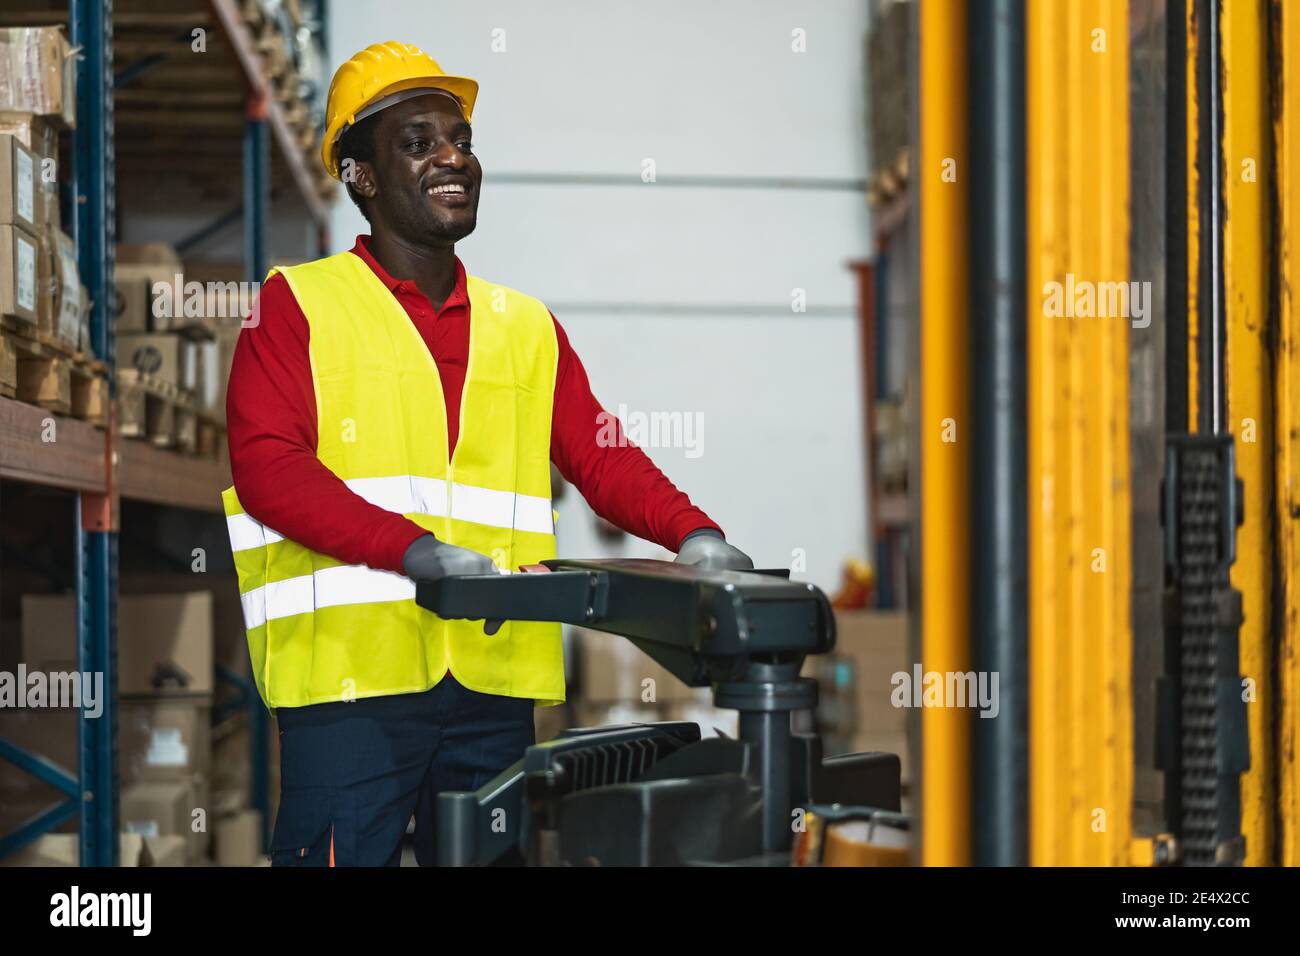 Homme noir travaillant dans un entrepôt avec des boîtes de livraison de chargement de chariot élévateur - concept logistique et industrie Banque D'Images